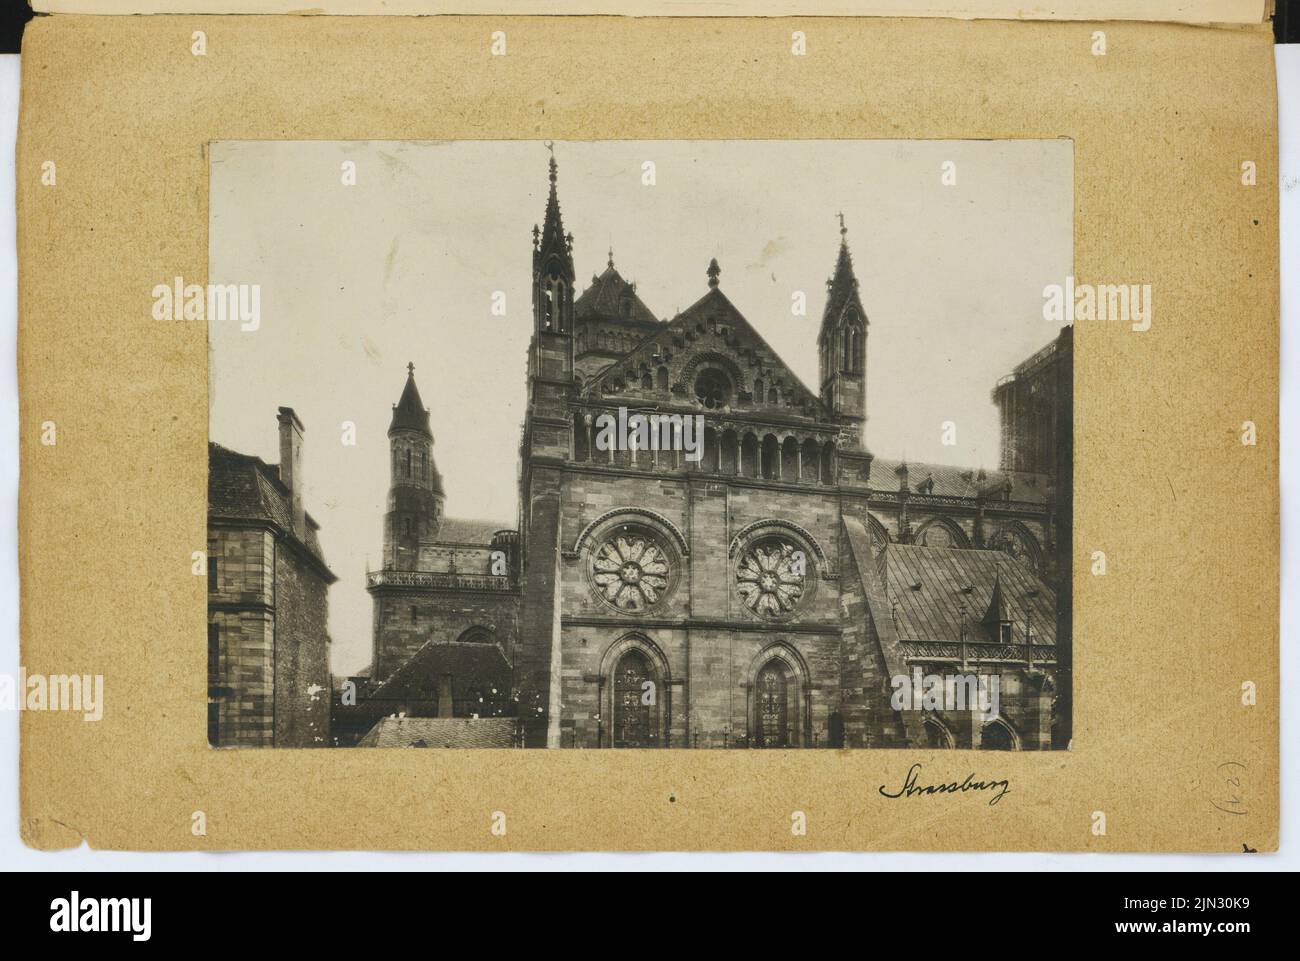 Stiehl Otto (1860-1940): Sketch and photo album 7: St. Thomas, Strasbourg Stock Photo